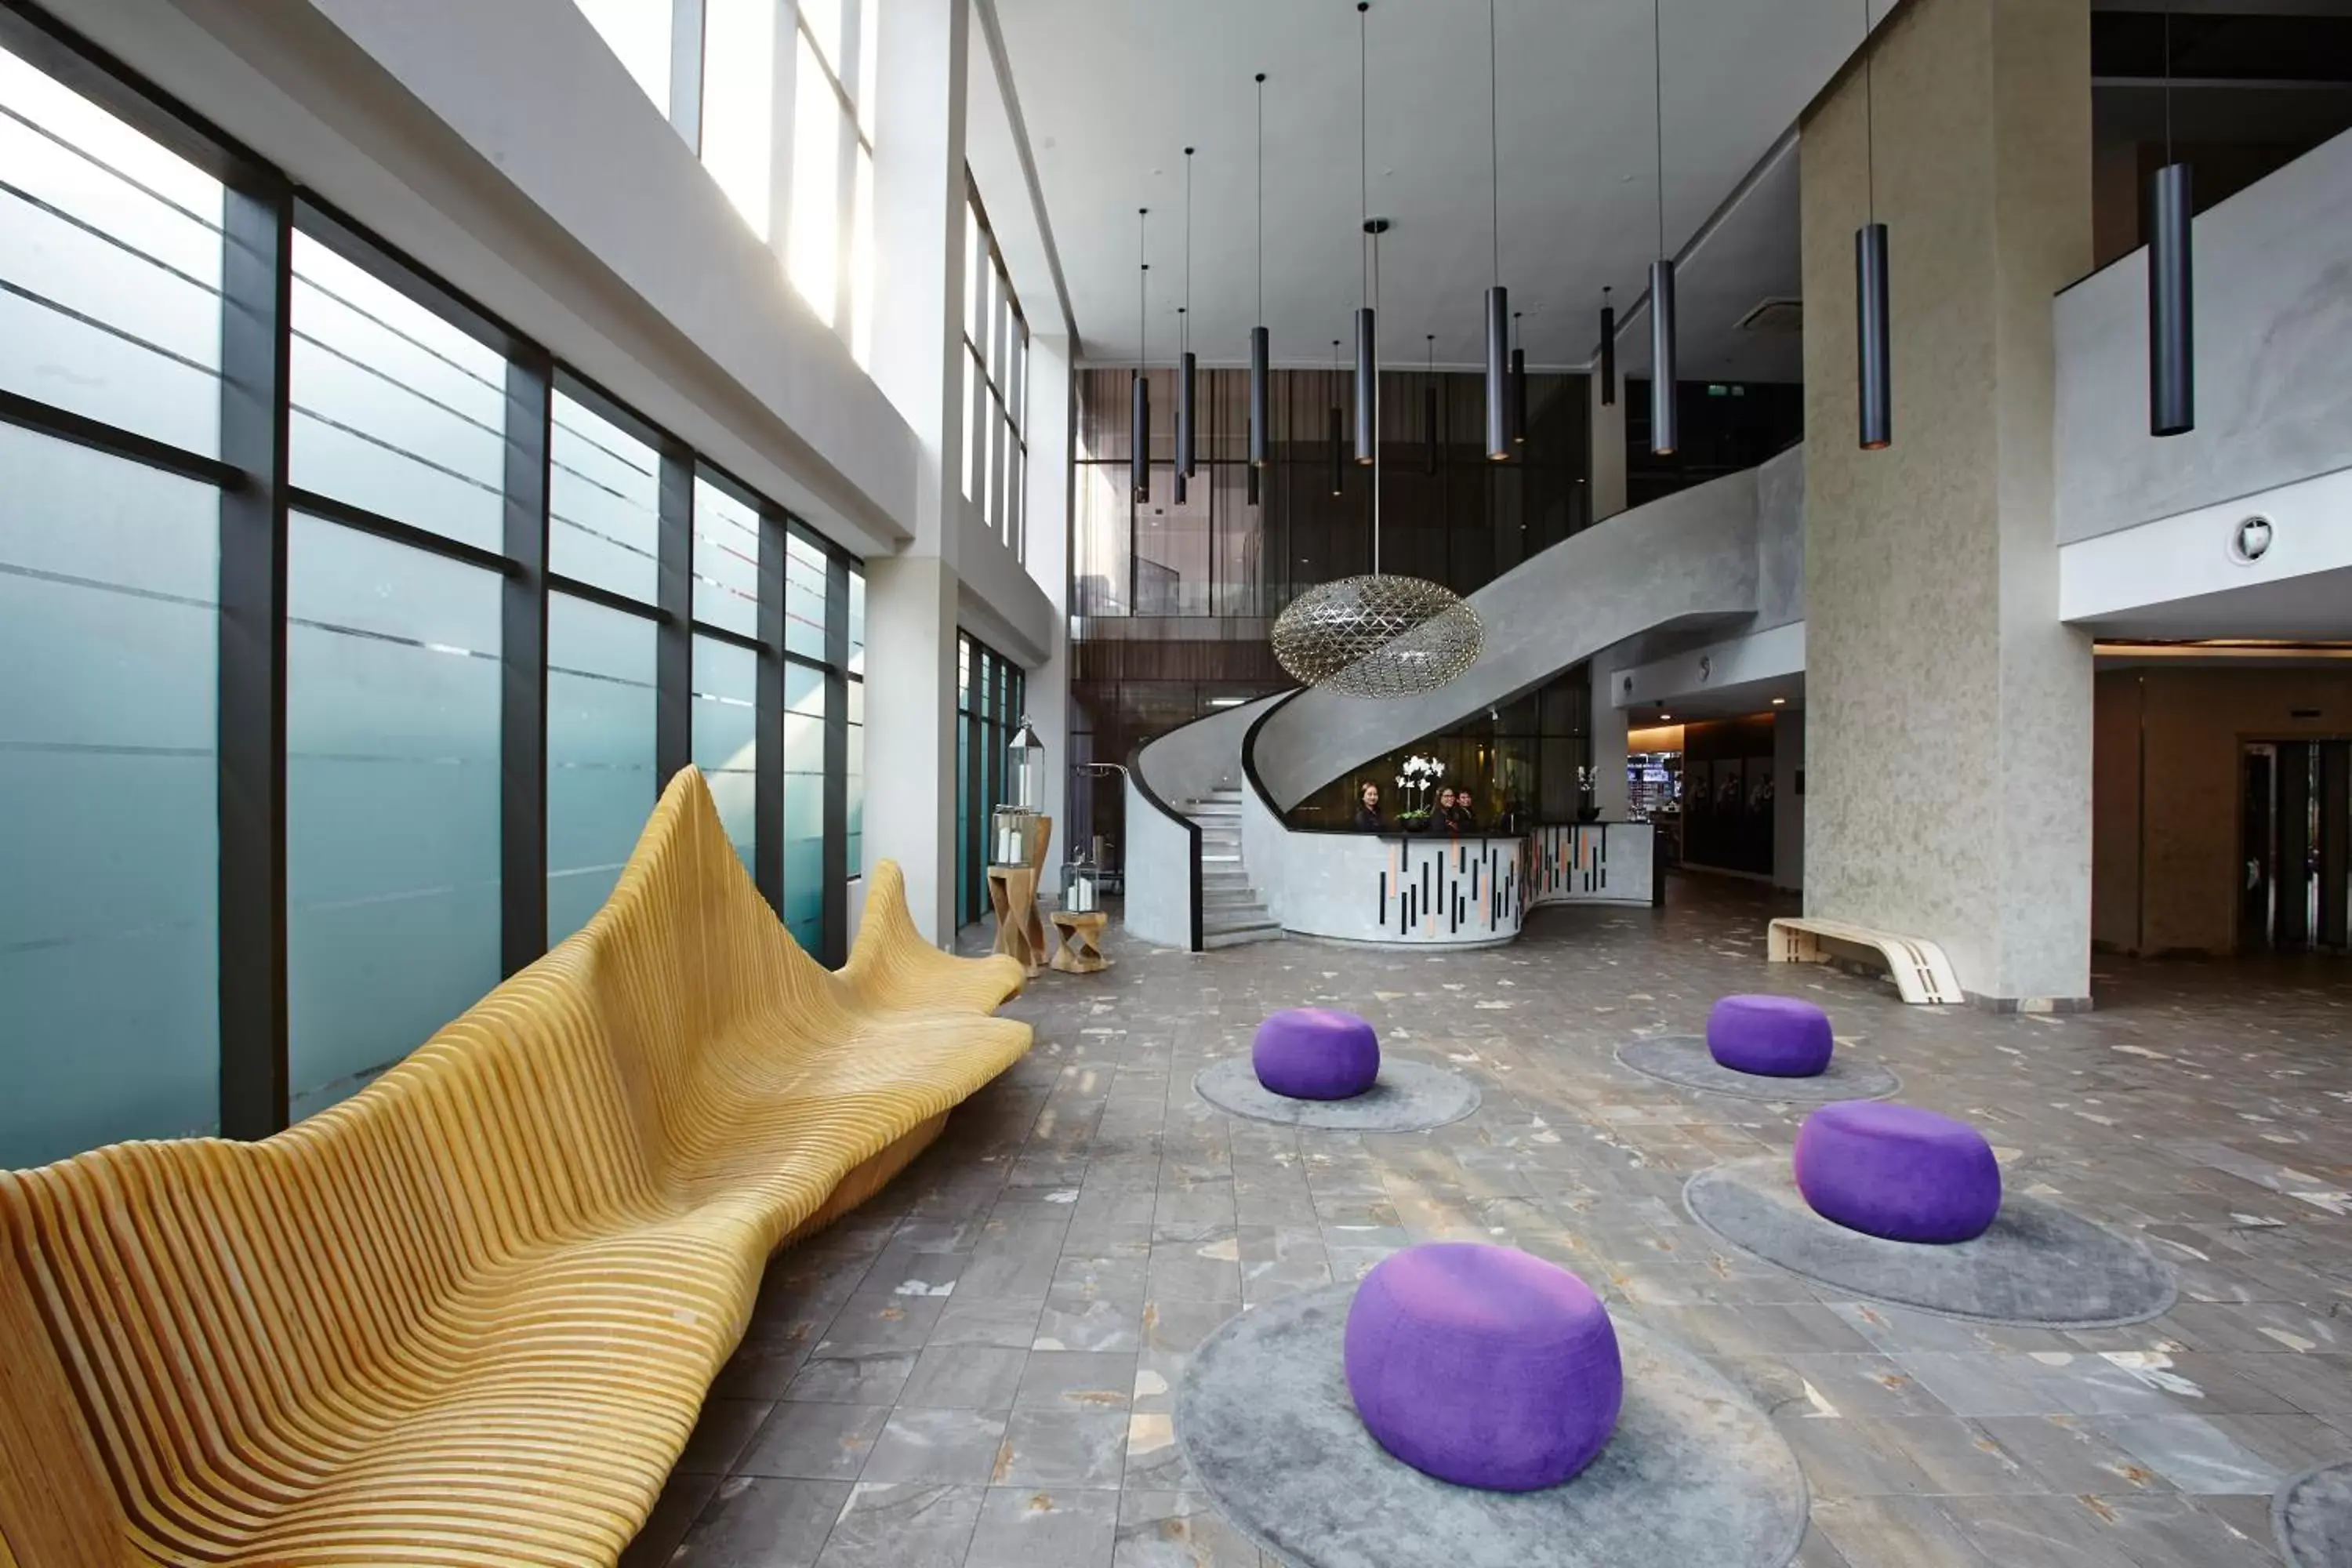 Lobby or reception in Qliq Damansara Hotel